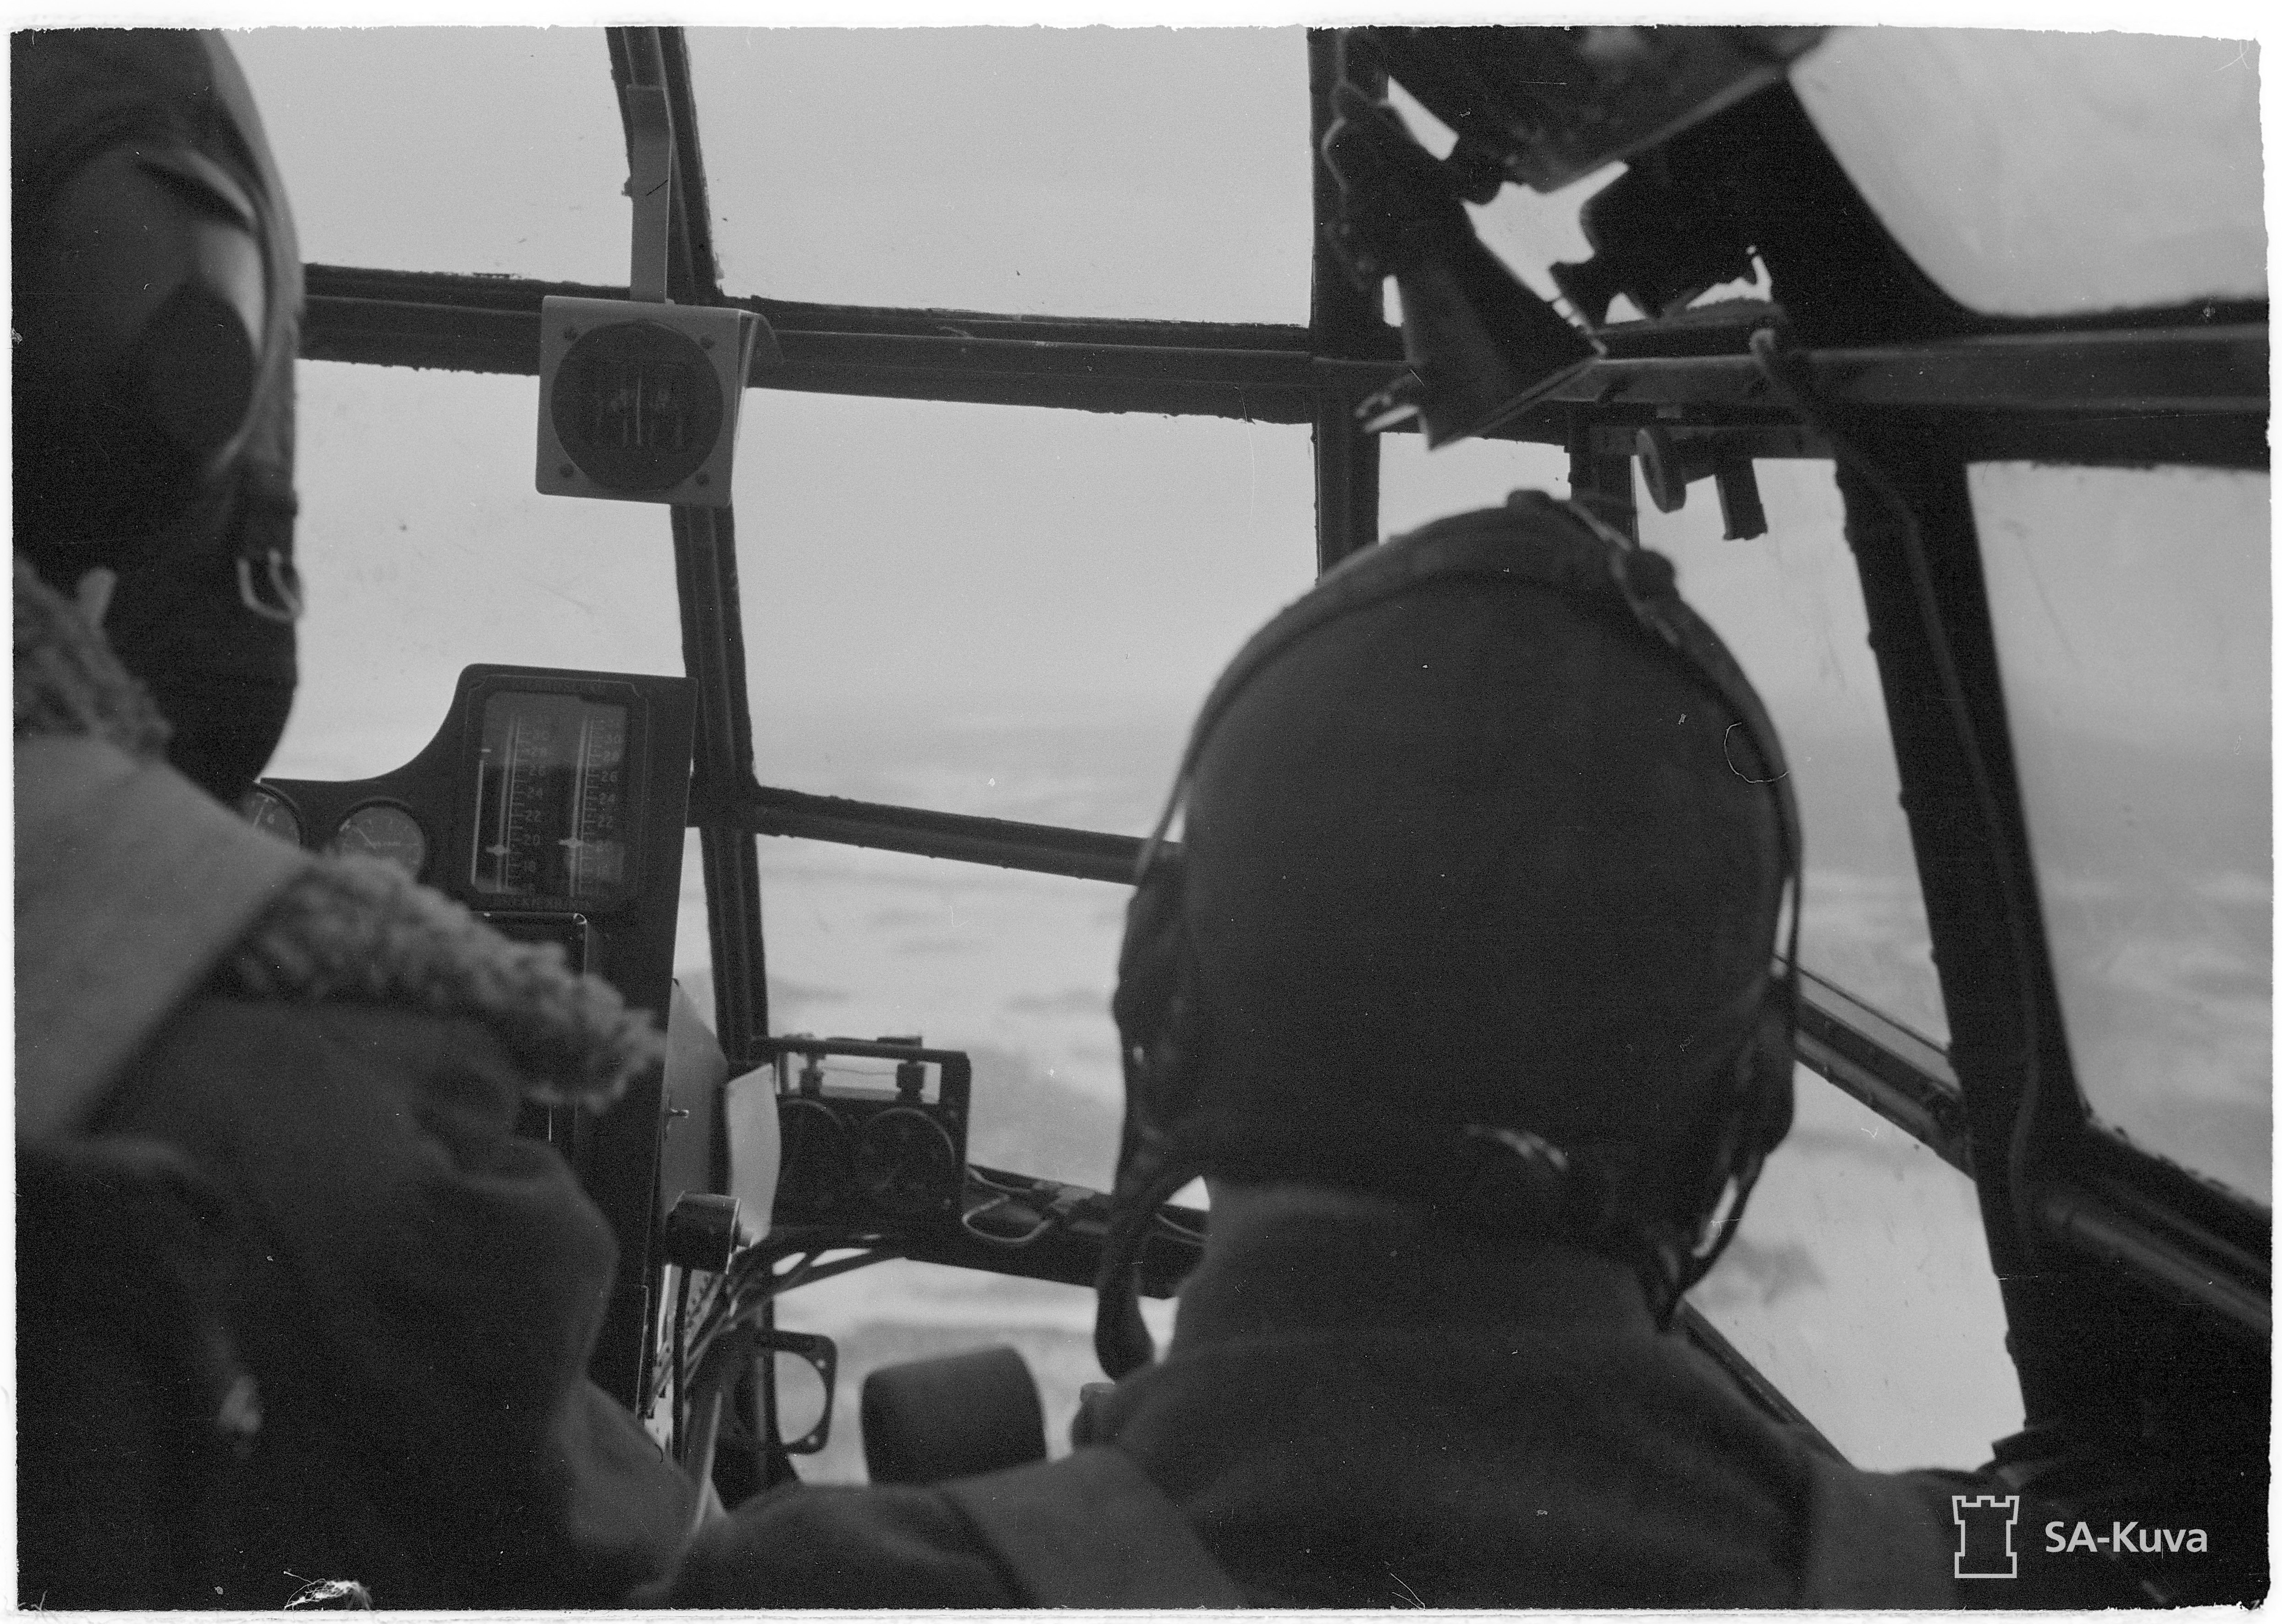 Bristol Blenheim I FAF LeLv42 at Luonetjarven 1st Apr 1944 02